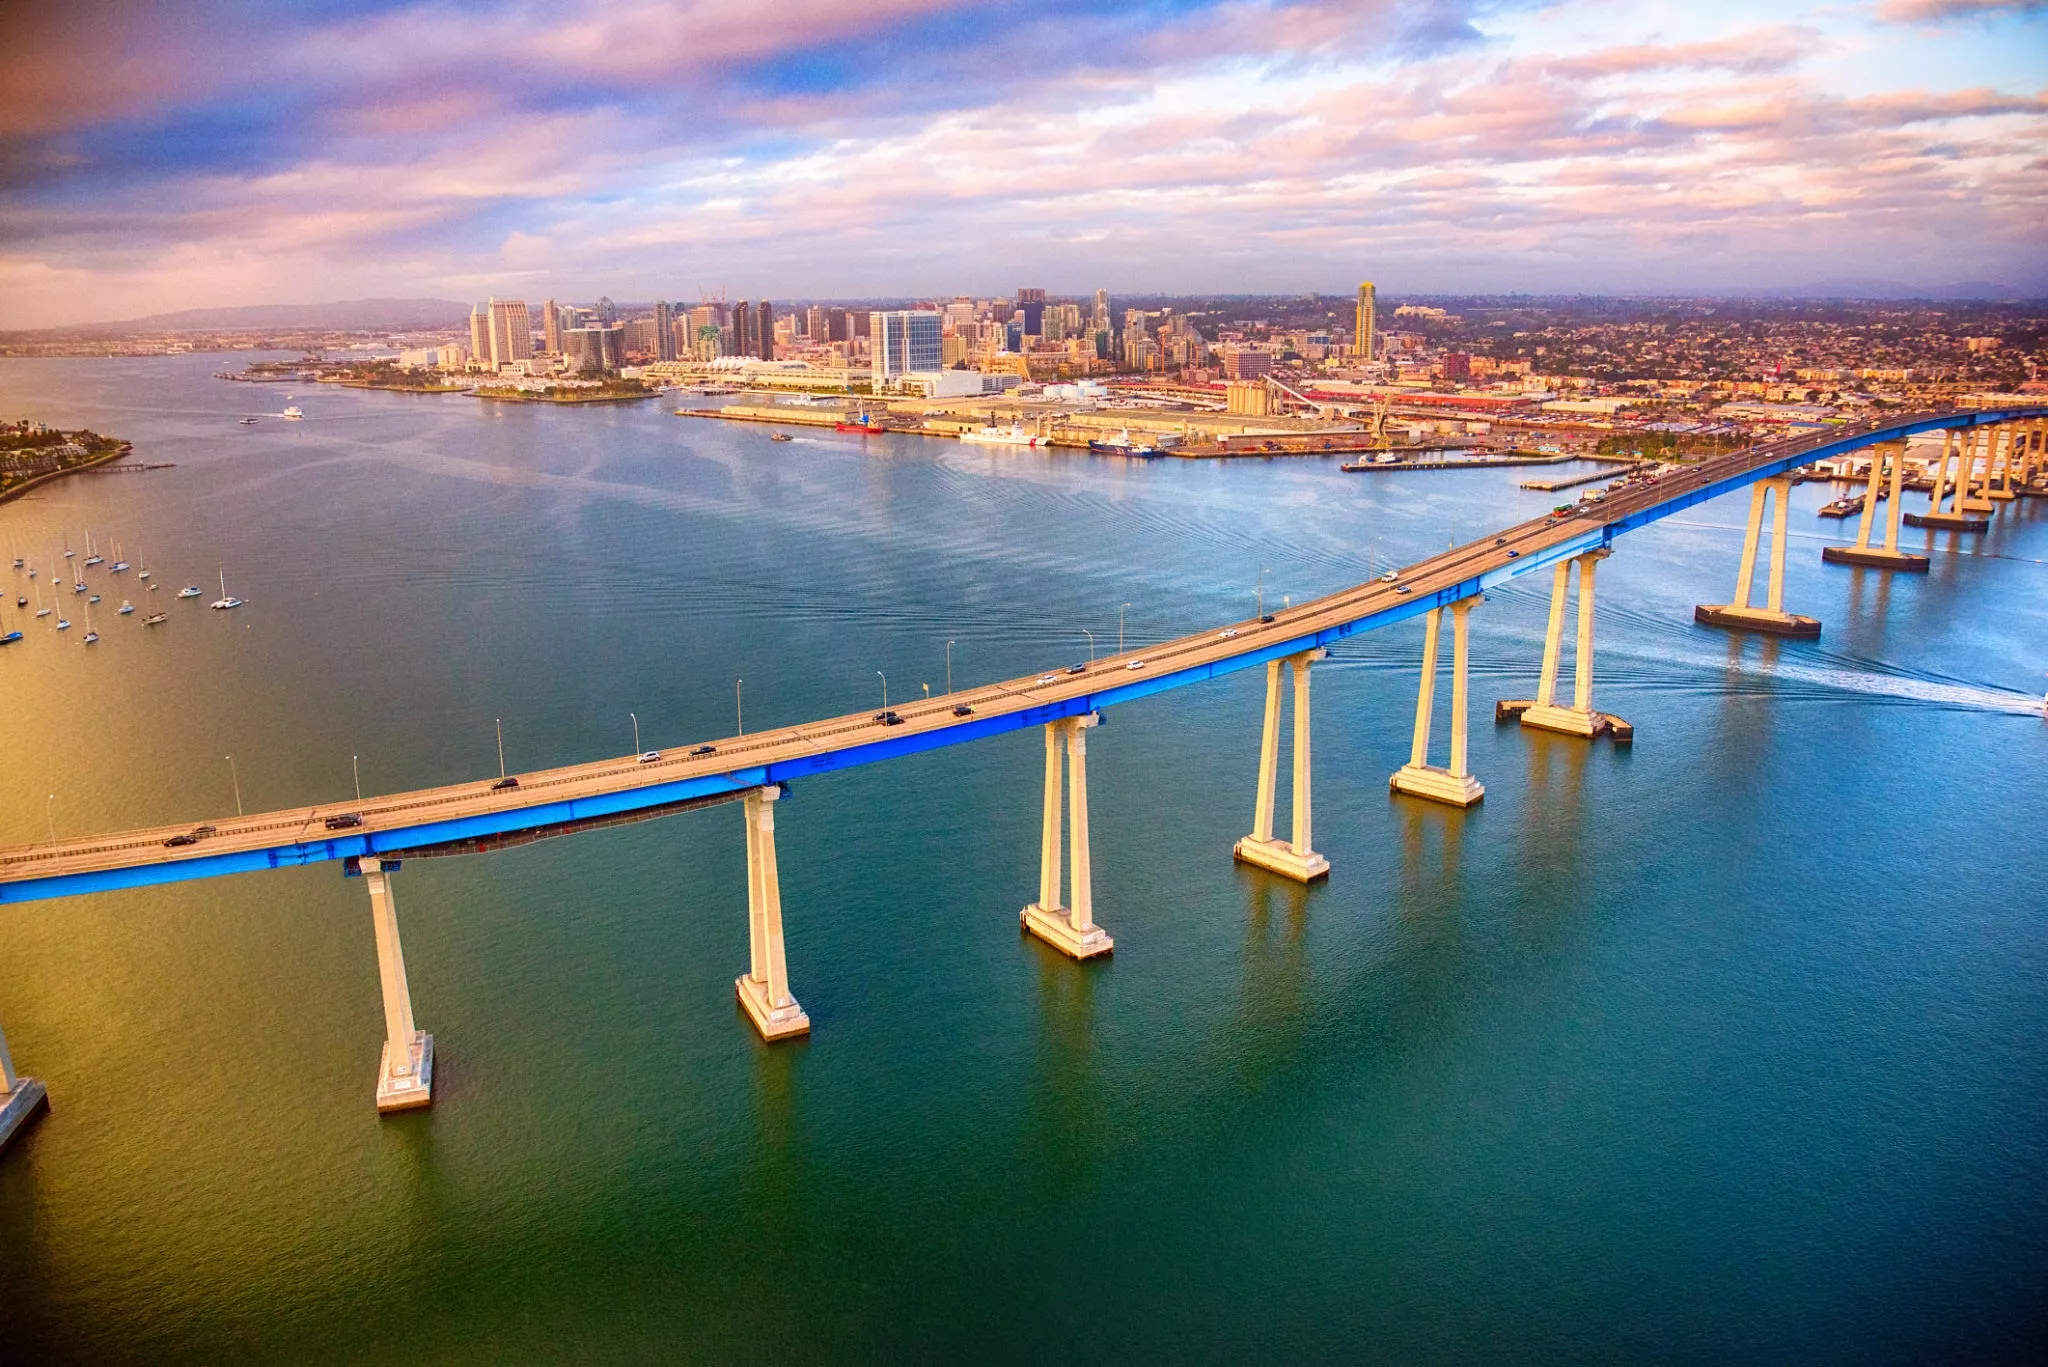 Bridge of San Diego - Coronado in USA, North America | Architecture - Rated 3.7